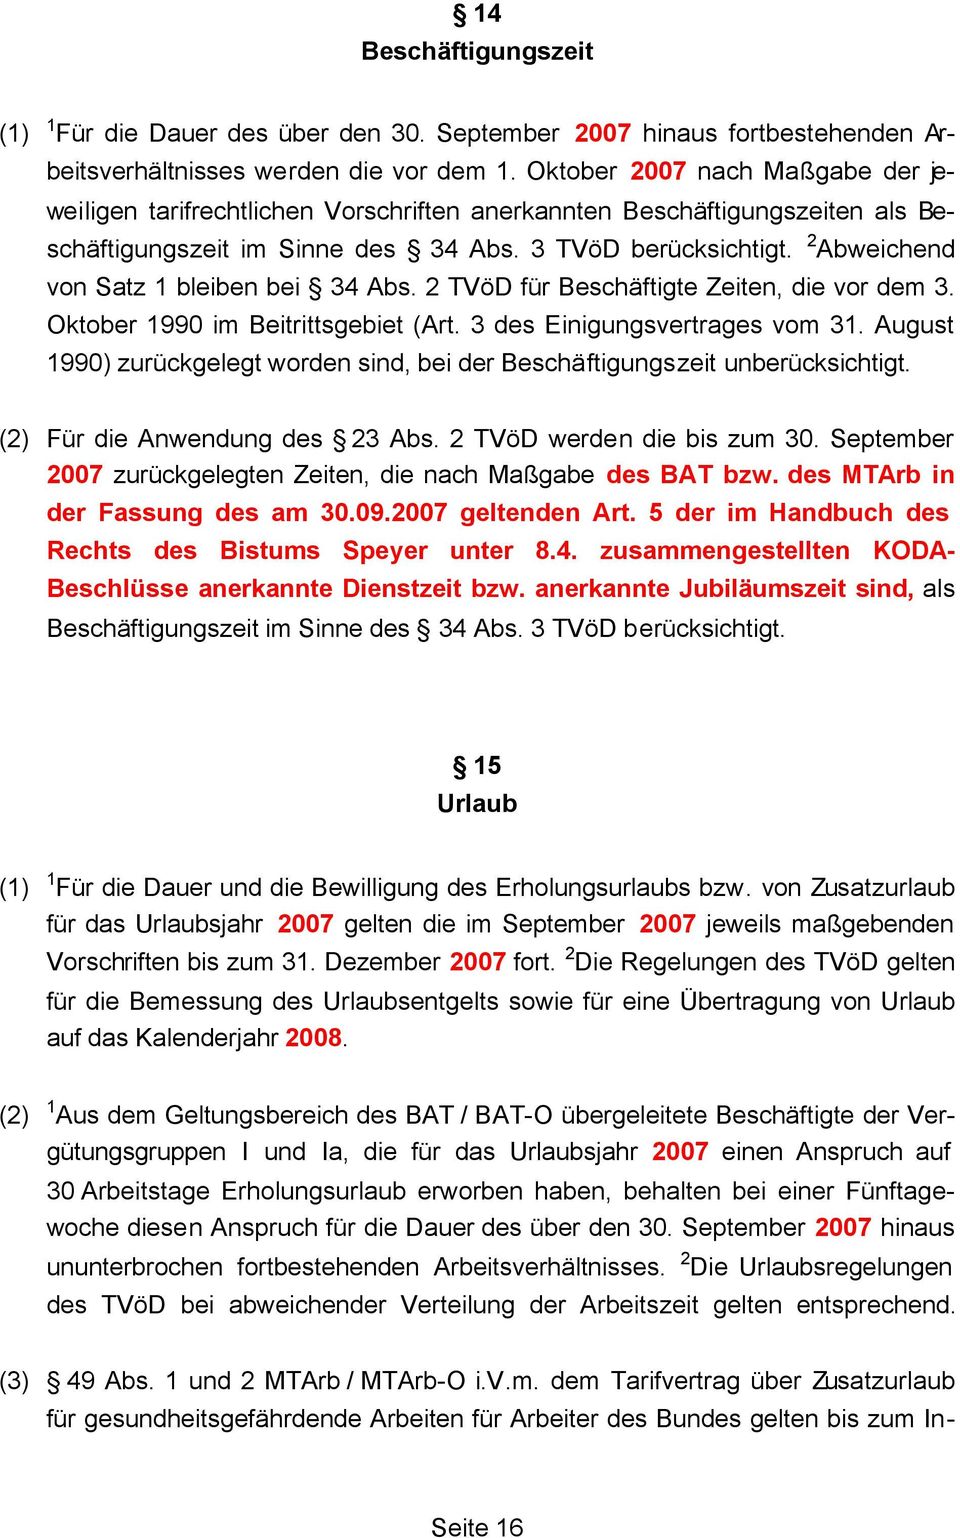 2 Abweichend von Satz 1 bleiben bei 34 Abs. 2 TVöD für Beschäftigte Zeiten, die vor dem 3. Oktober 1990 im Beitrittsgebiet (Art. 3 des Einigungsvertrages vom 31.